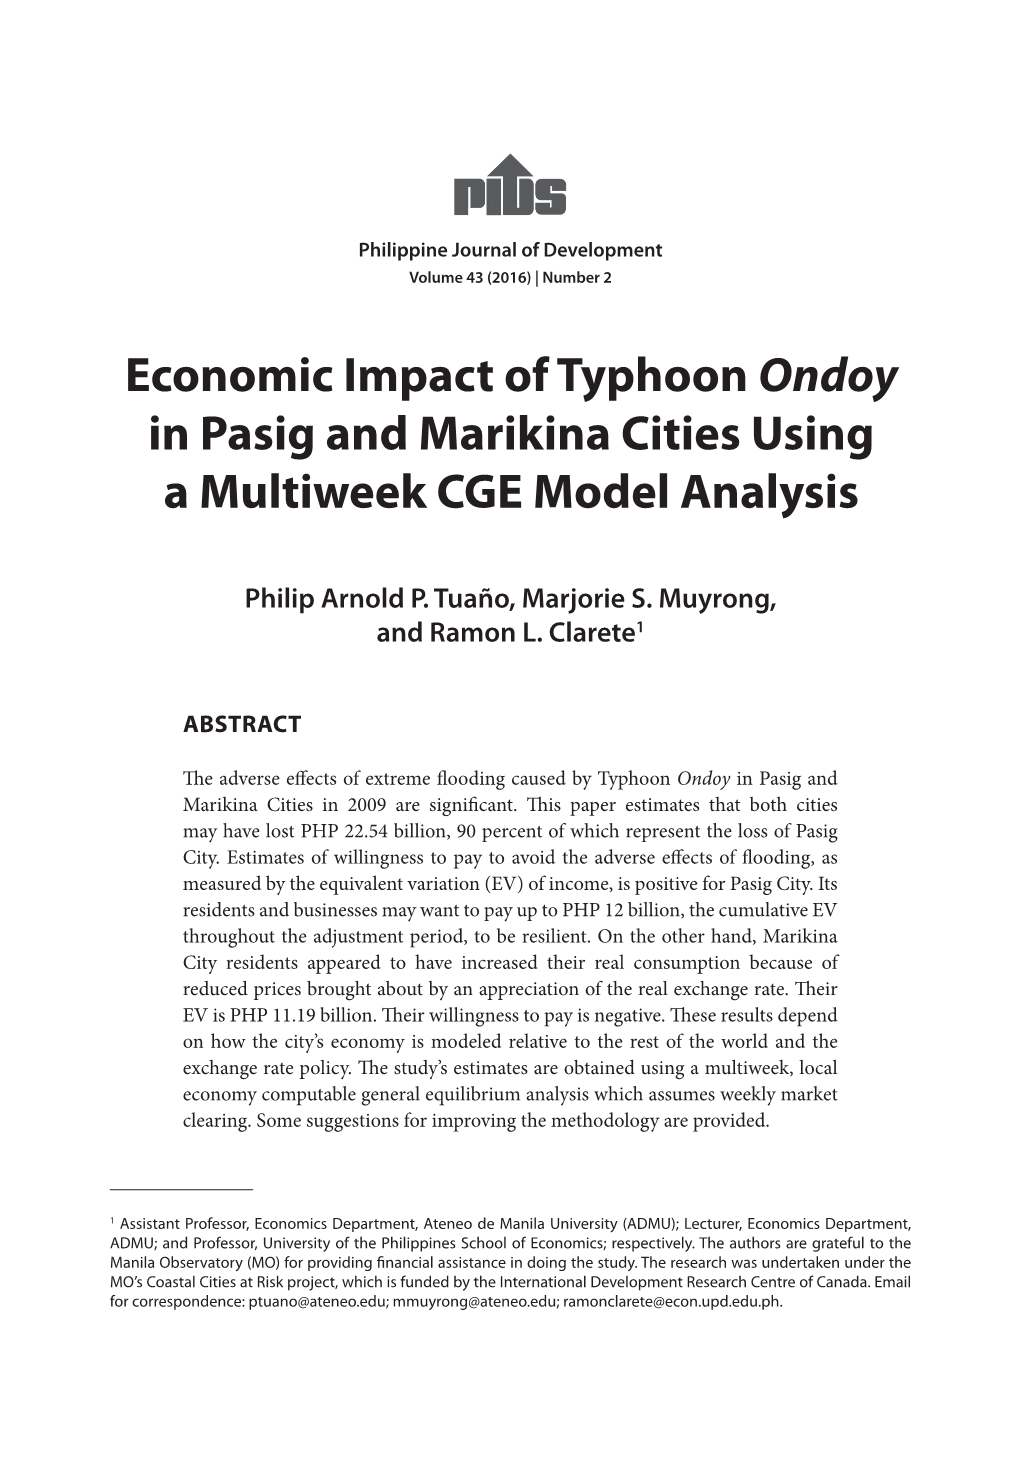 Economic Impact of Typhoon Ondoy in Pasig and Marikina Cities Using a Multiweek CGE Model Analysis